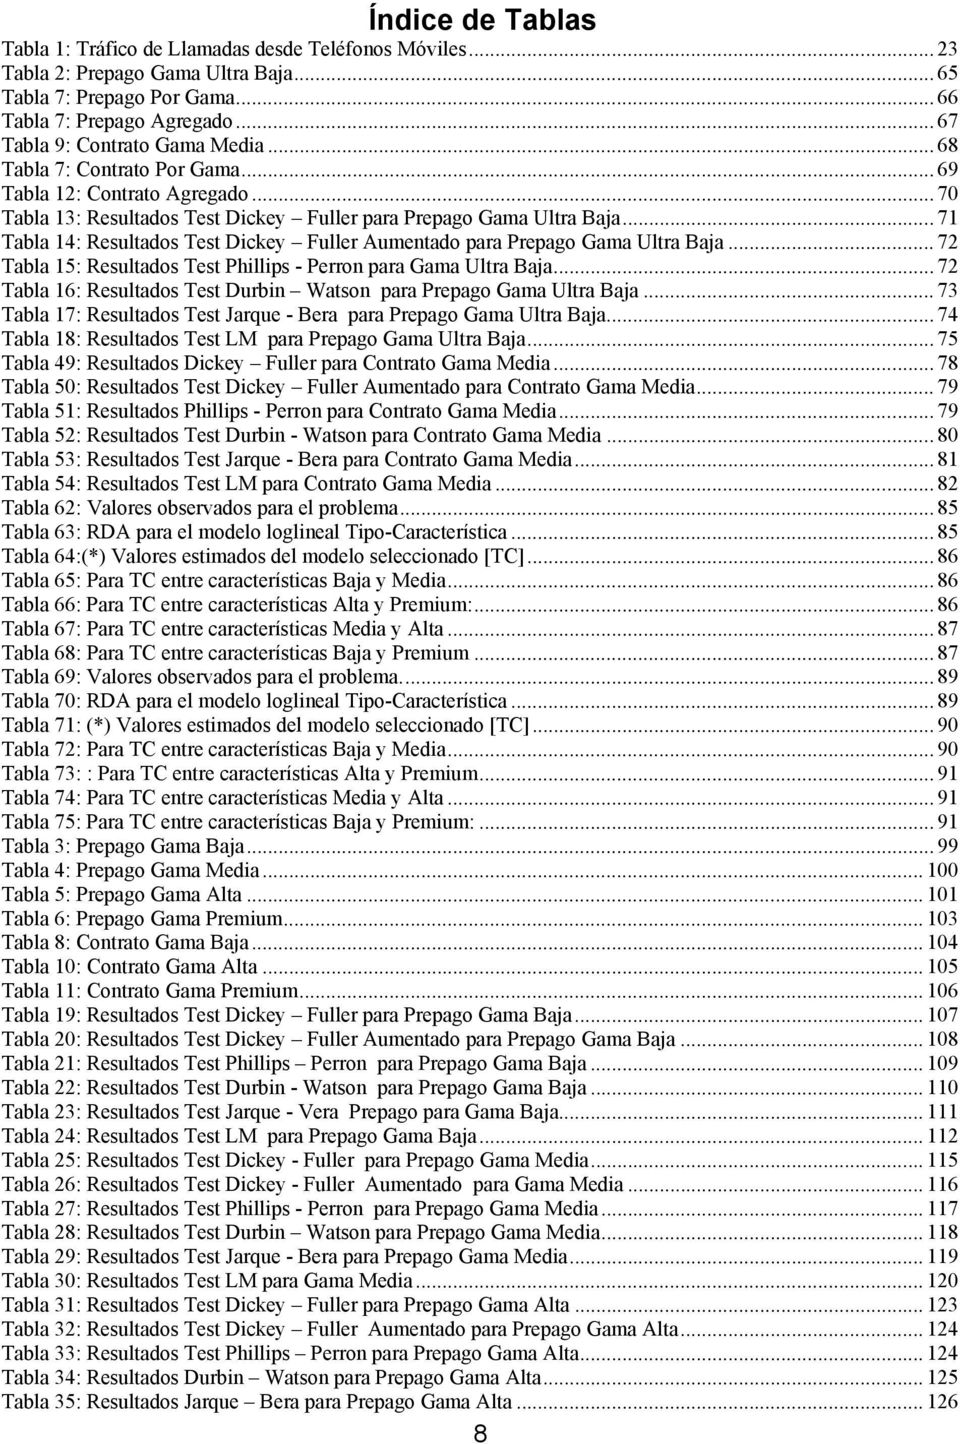 .. 71 Tabla 14: Resultados Test Dickey Fuller Aumentado para Prepago Gama Ultra Baja... 72 Tabla 15: Resultados Test Phillips - Perron para Gama Ultra Baja.